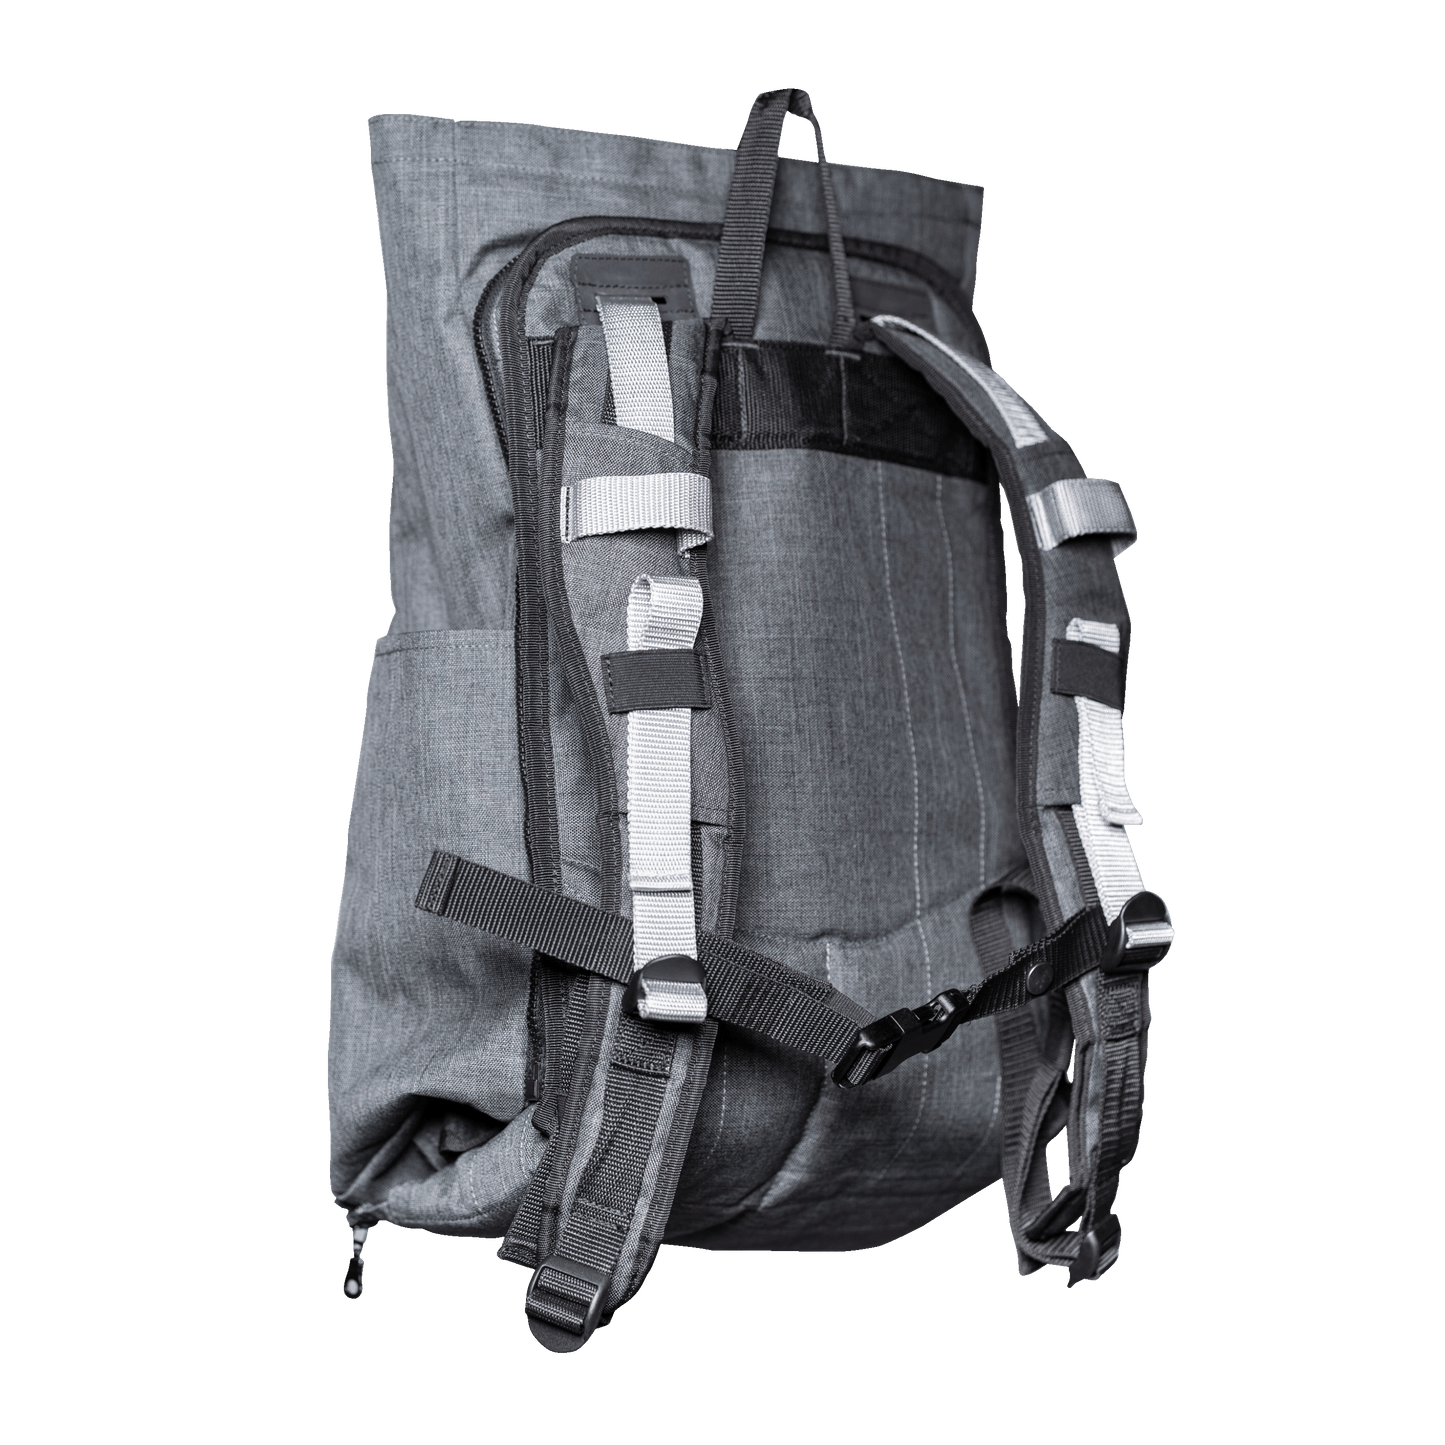 HOMB - Rucksack mit Rückentrage - Kindertrage ab 2 Jahre bis 25 kg-4